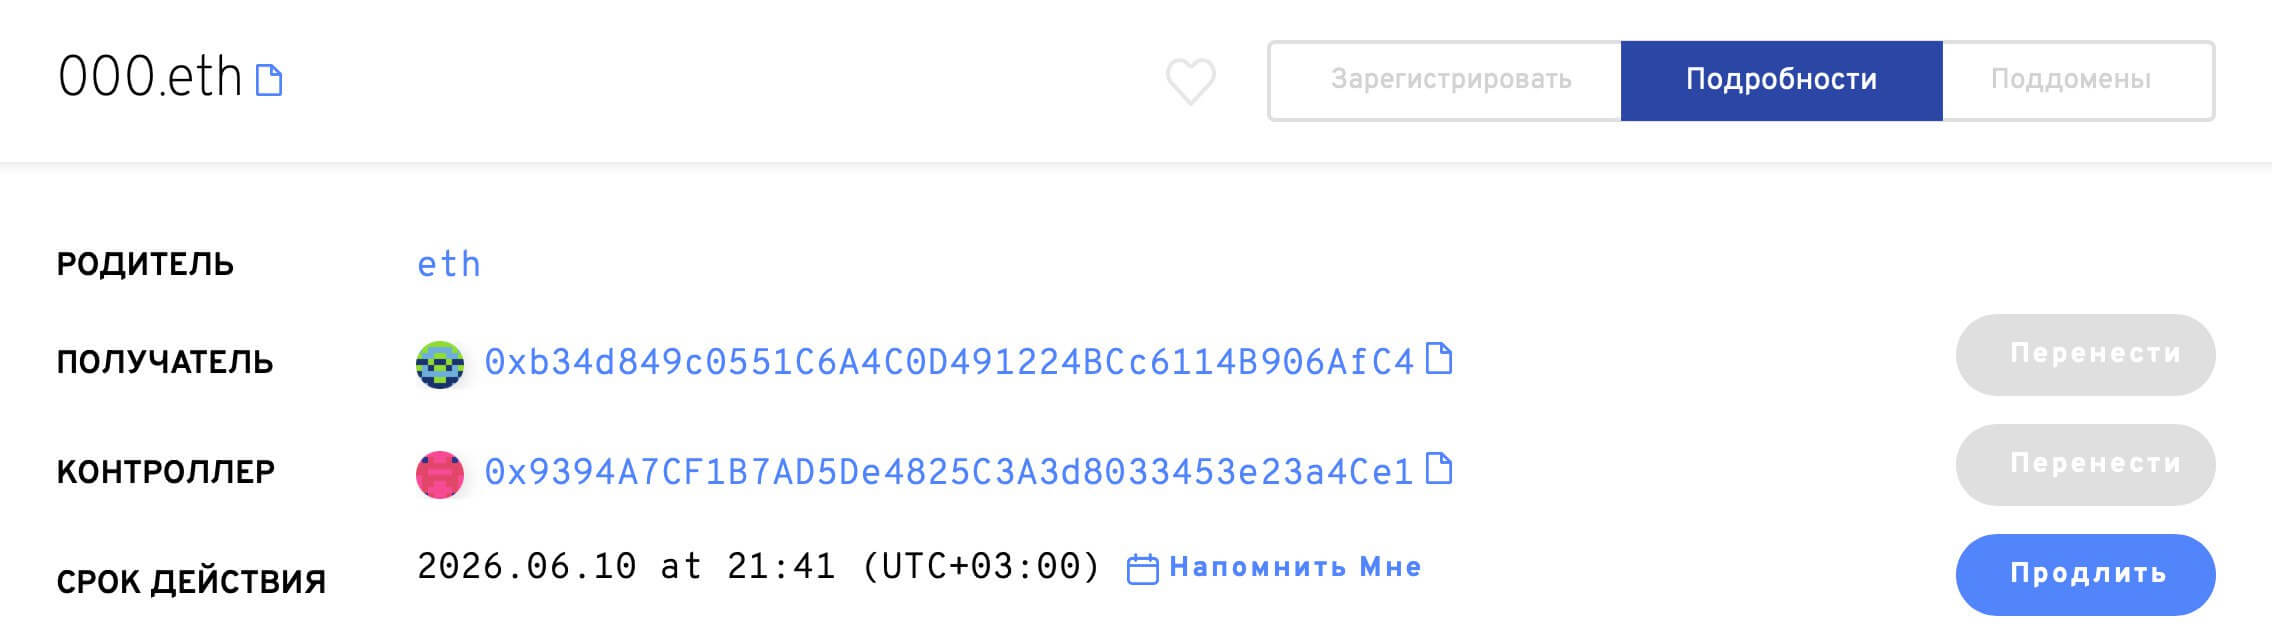 Создатель Telegram предложил продавать имена пользователей в мессенджере по примеру NFT-токенов. Информация о доменном имени 000.eth в сети Эфириума. Фото.